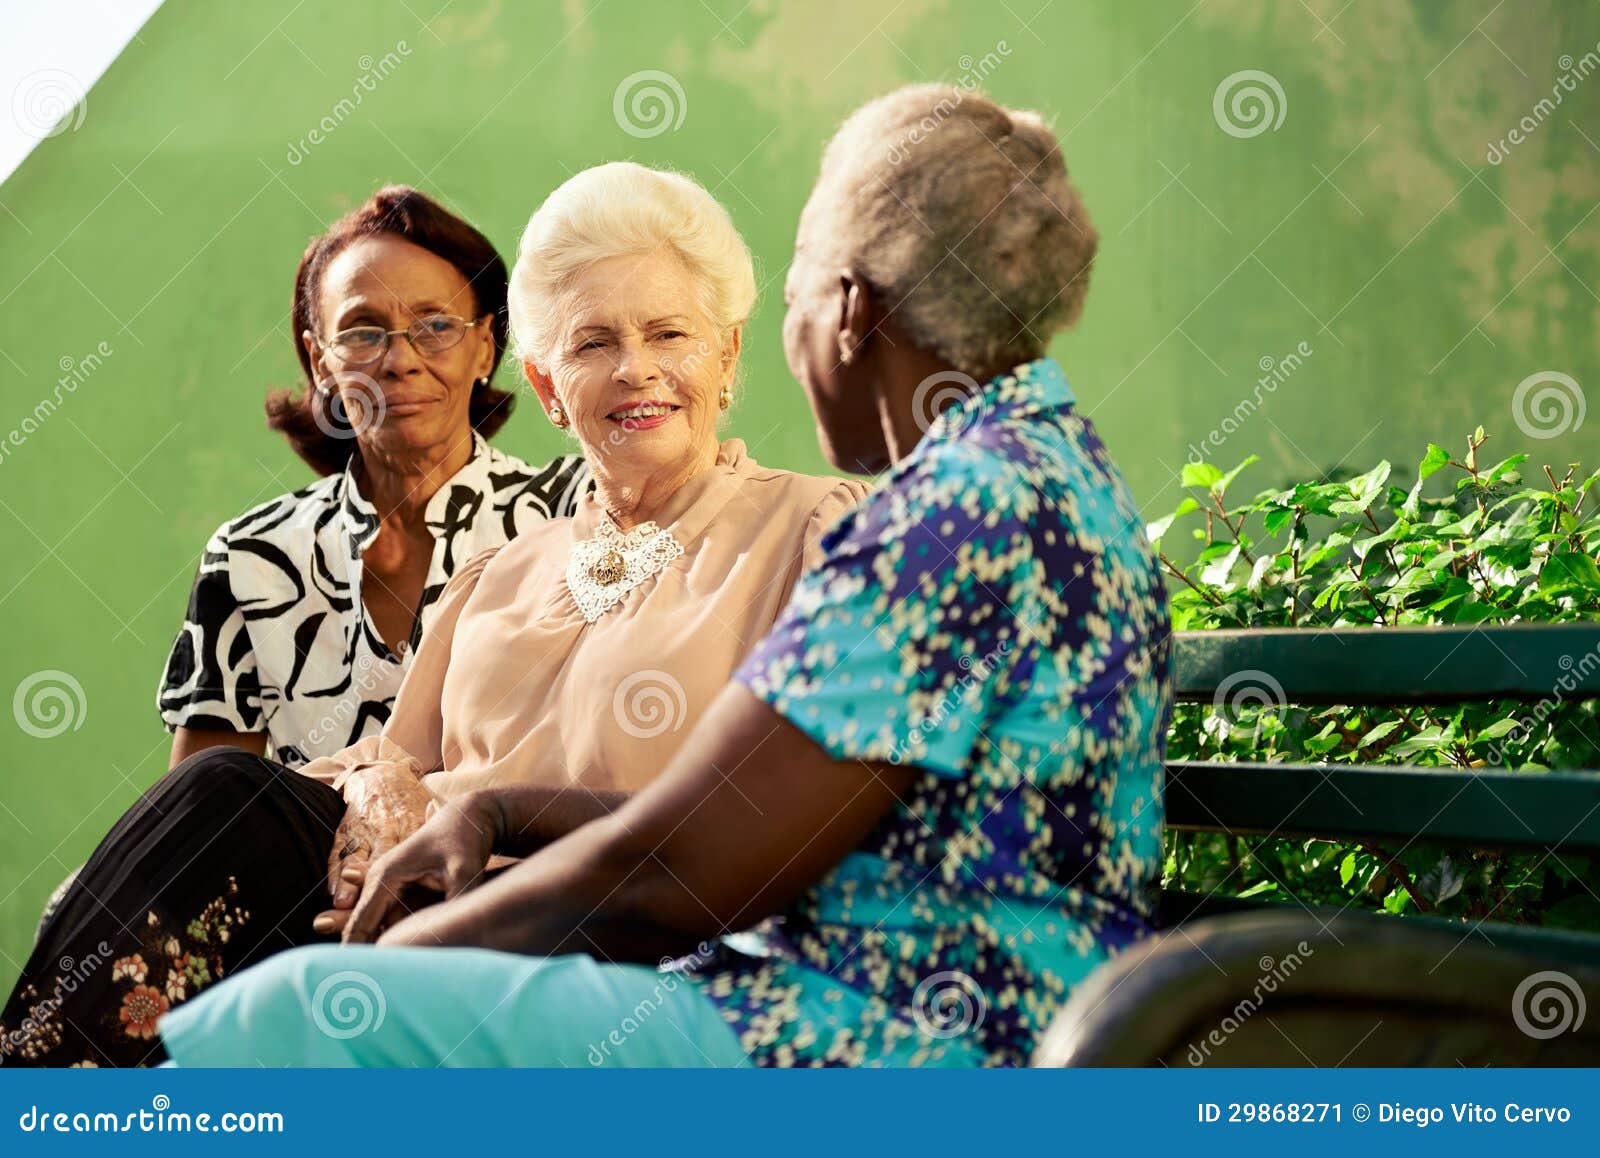 黑人白人妇女 库存图片. 图片 包括有 友谊, 激情, 富感情的, 晒裂, 男人, 破擦声, 电话会议, 女性 - 7337871